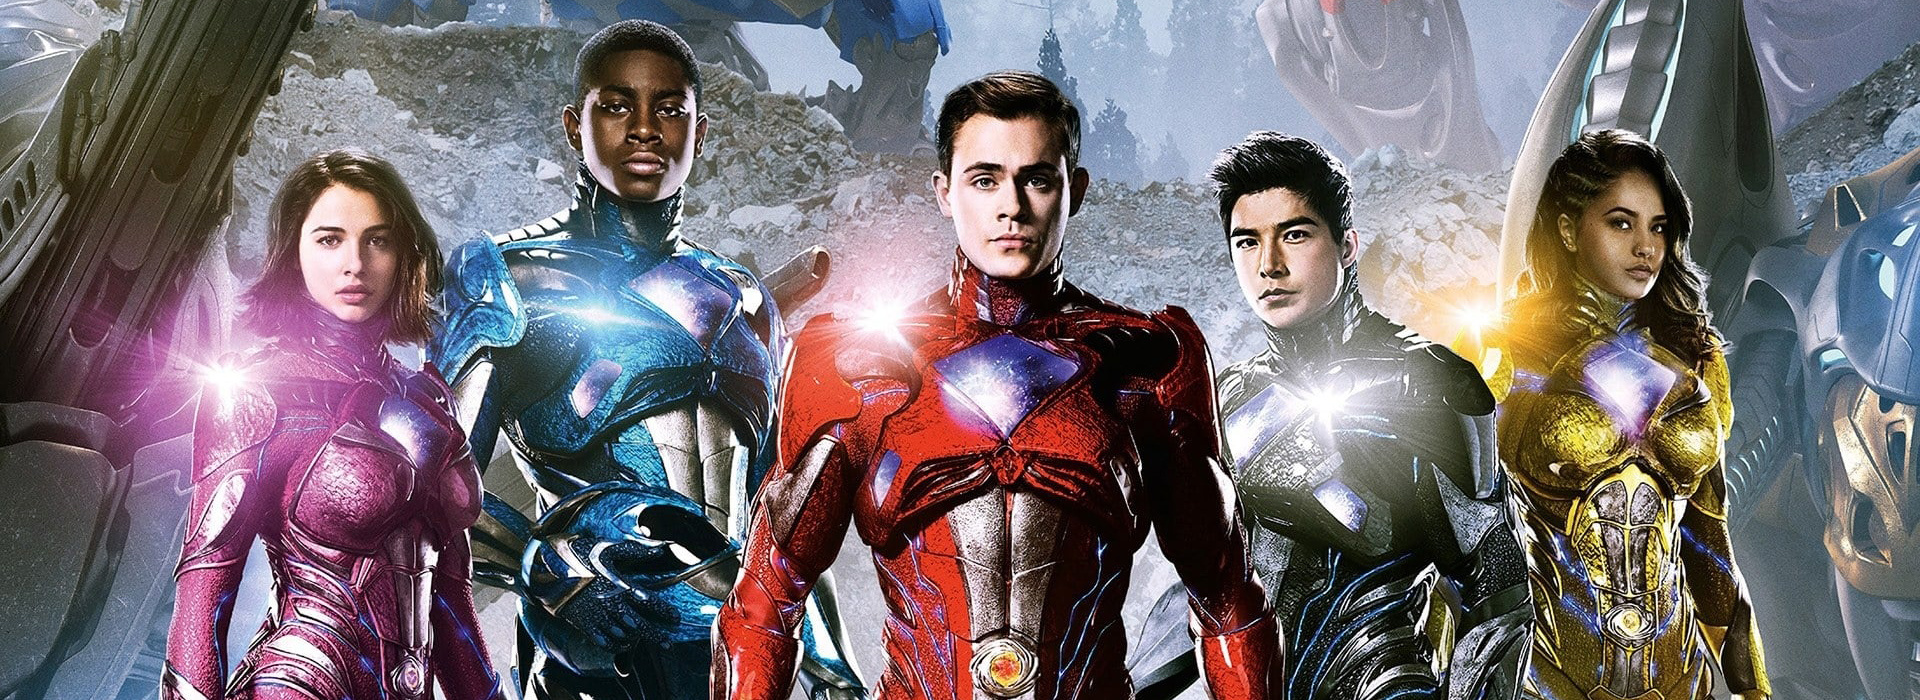 Movie poster Seban's Power Rangers